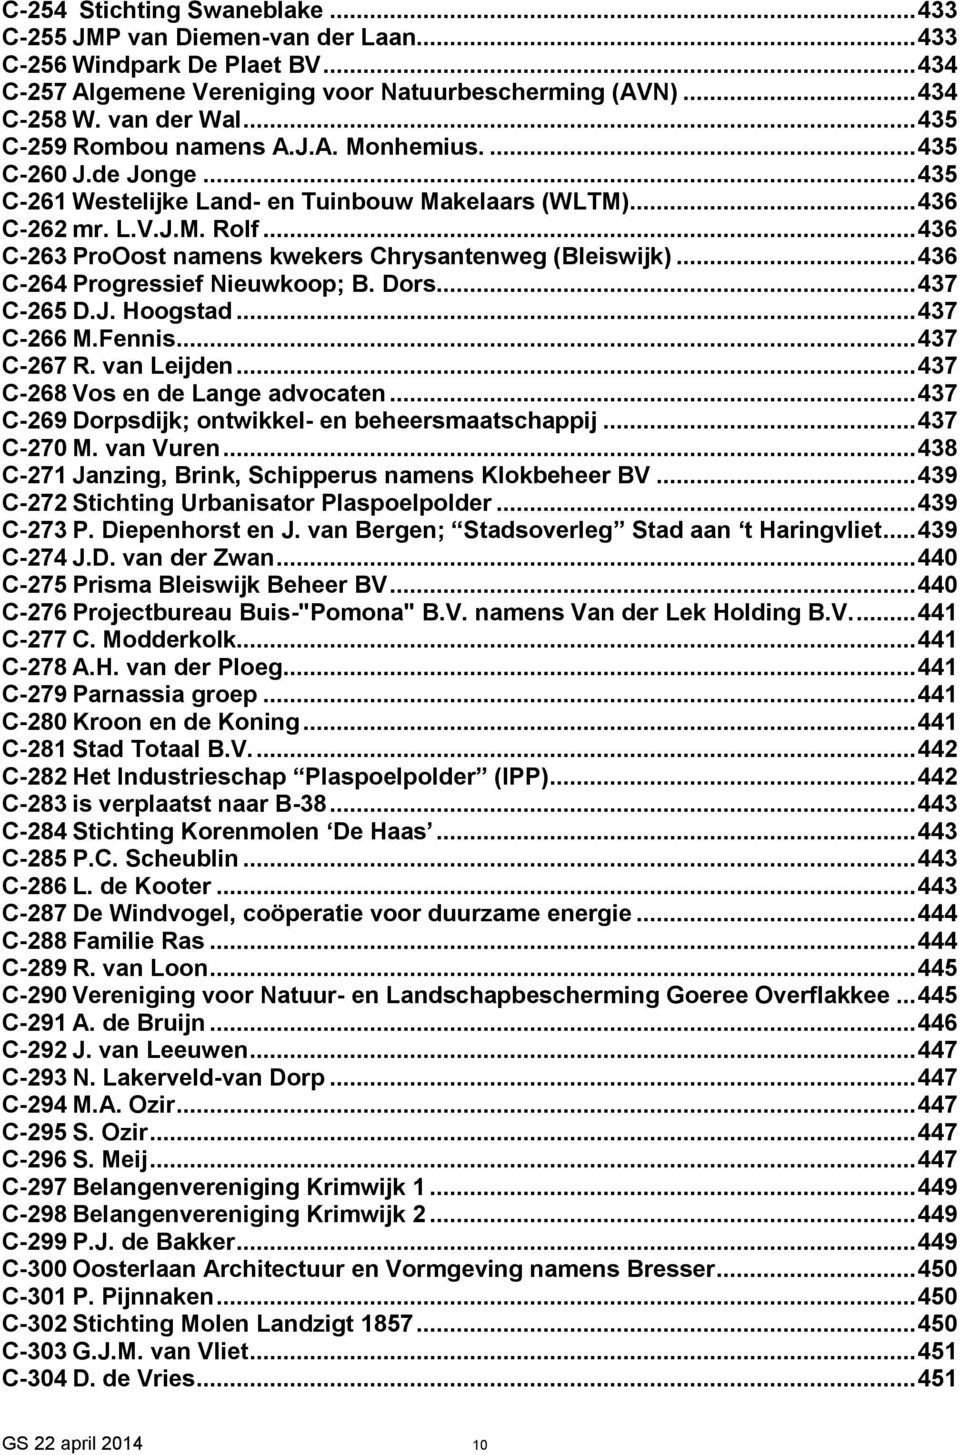 .. 436 C-263 ProOost namens kwekers Chrysantenweg (Bleiswijk)... 436 C-264 Progressief Nieuwkoop; B. Dors... 437 C-265 D.J. Hoogstad... 437 C-266 M.Fennis... 437 C-267 R. van Leijden.